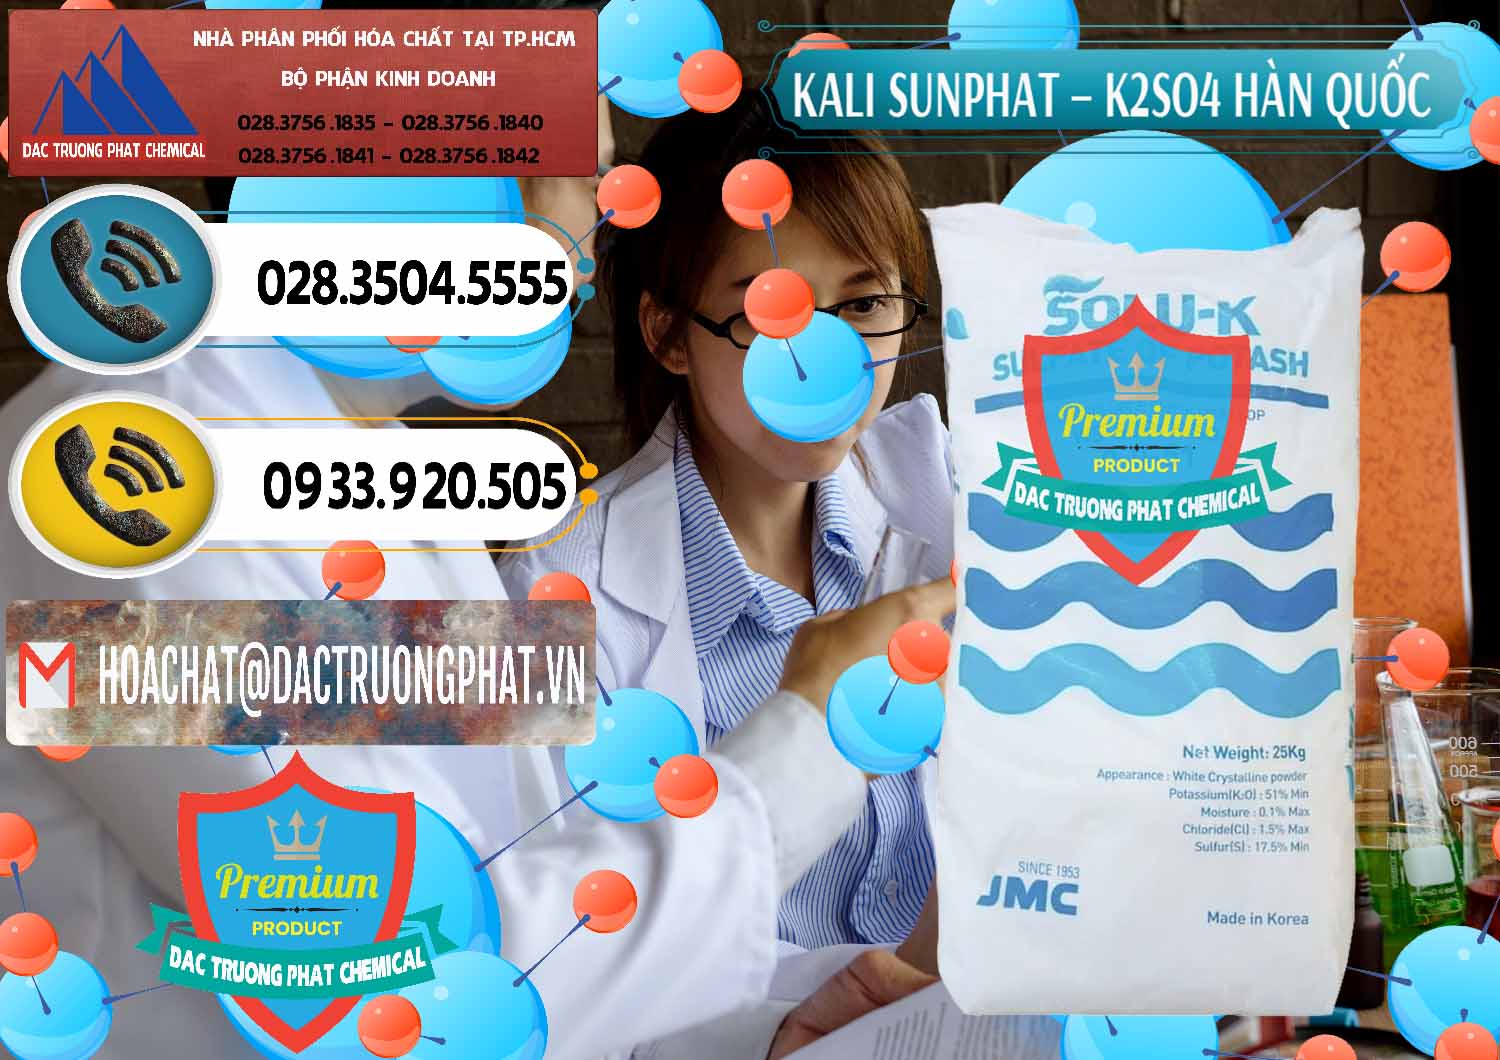 Cty chuyên phân phối và bán Kali Sunphat – K2SO4 Hàn Quốc Korea - 0410 - Chuyên bán - phân phối hóa chất tại TP.HCM - hoachatdetnhuom.vn